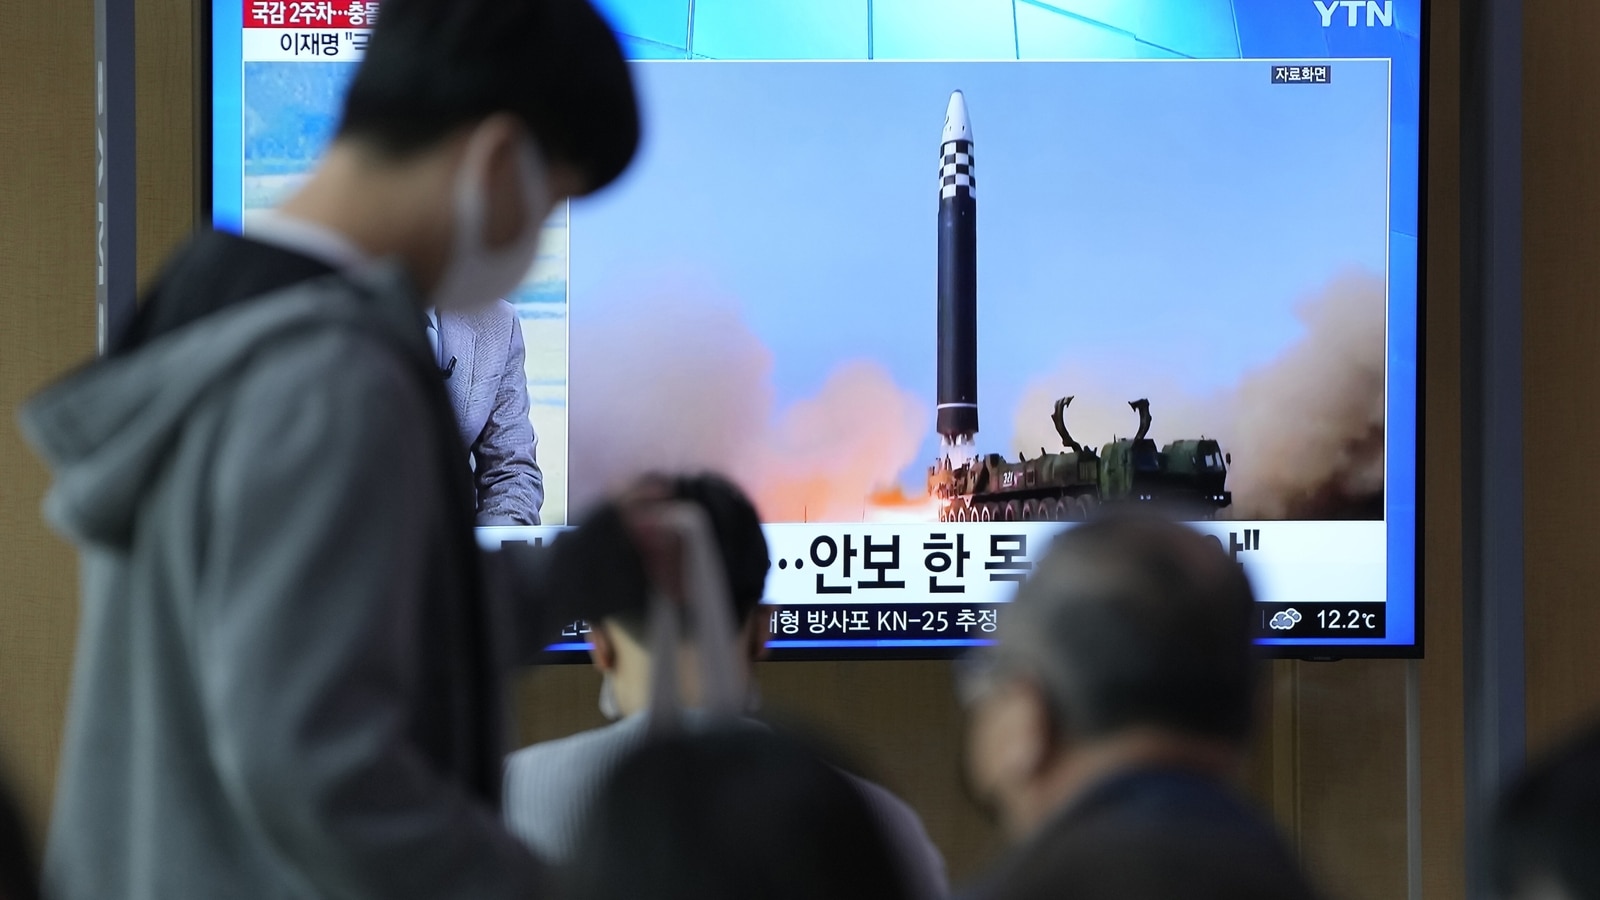 북한의 핵이 두려운가?  벙커 건설, 한국 교수의 말 |  세계 뉴스